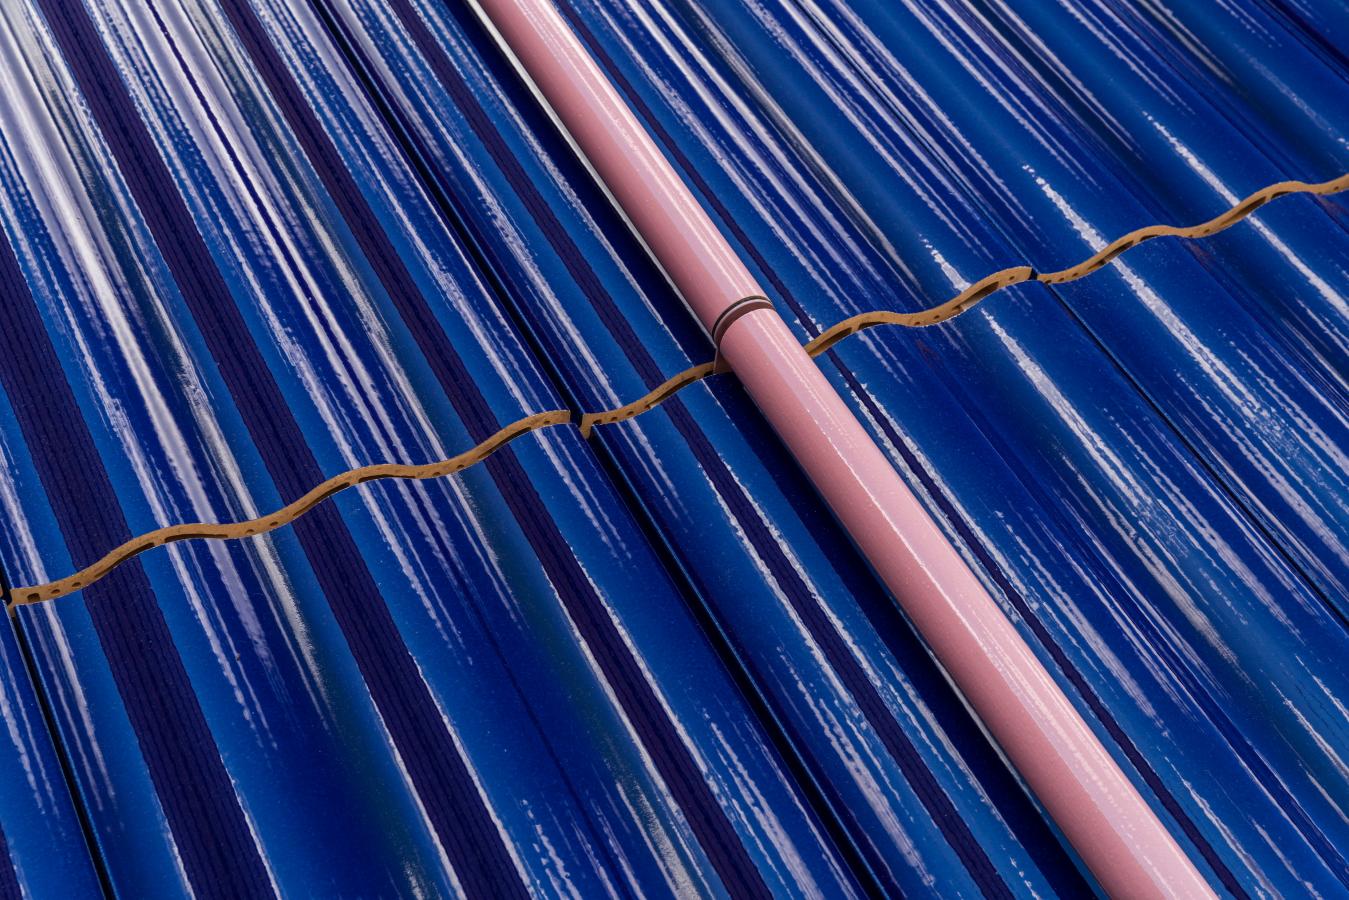 Lähikuva aaltoilevasta sinisestä seinäpinnasta, jonka poikki kulkee vaaleanpunainen palkki.